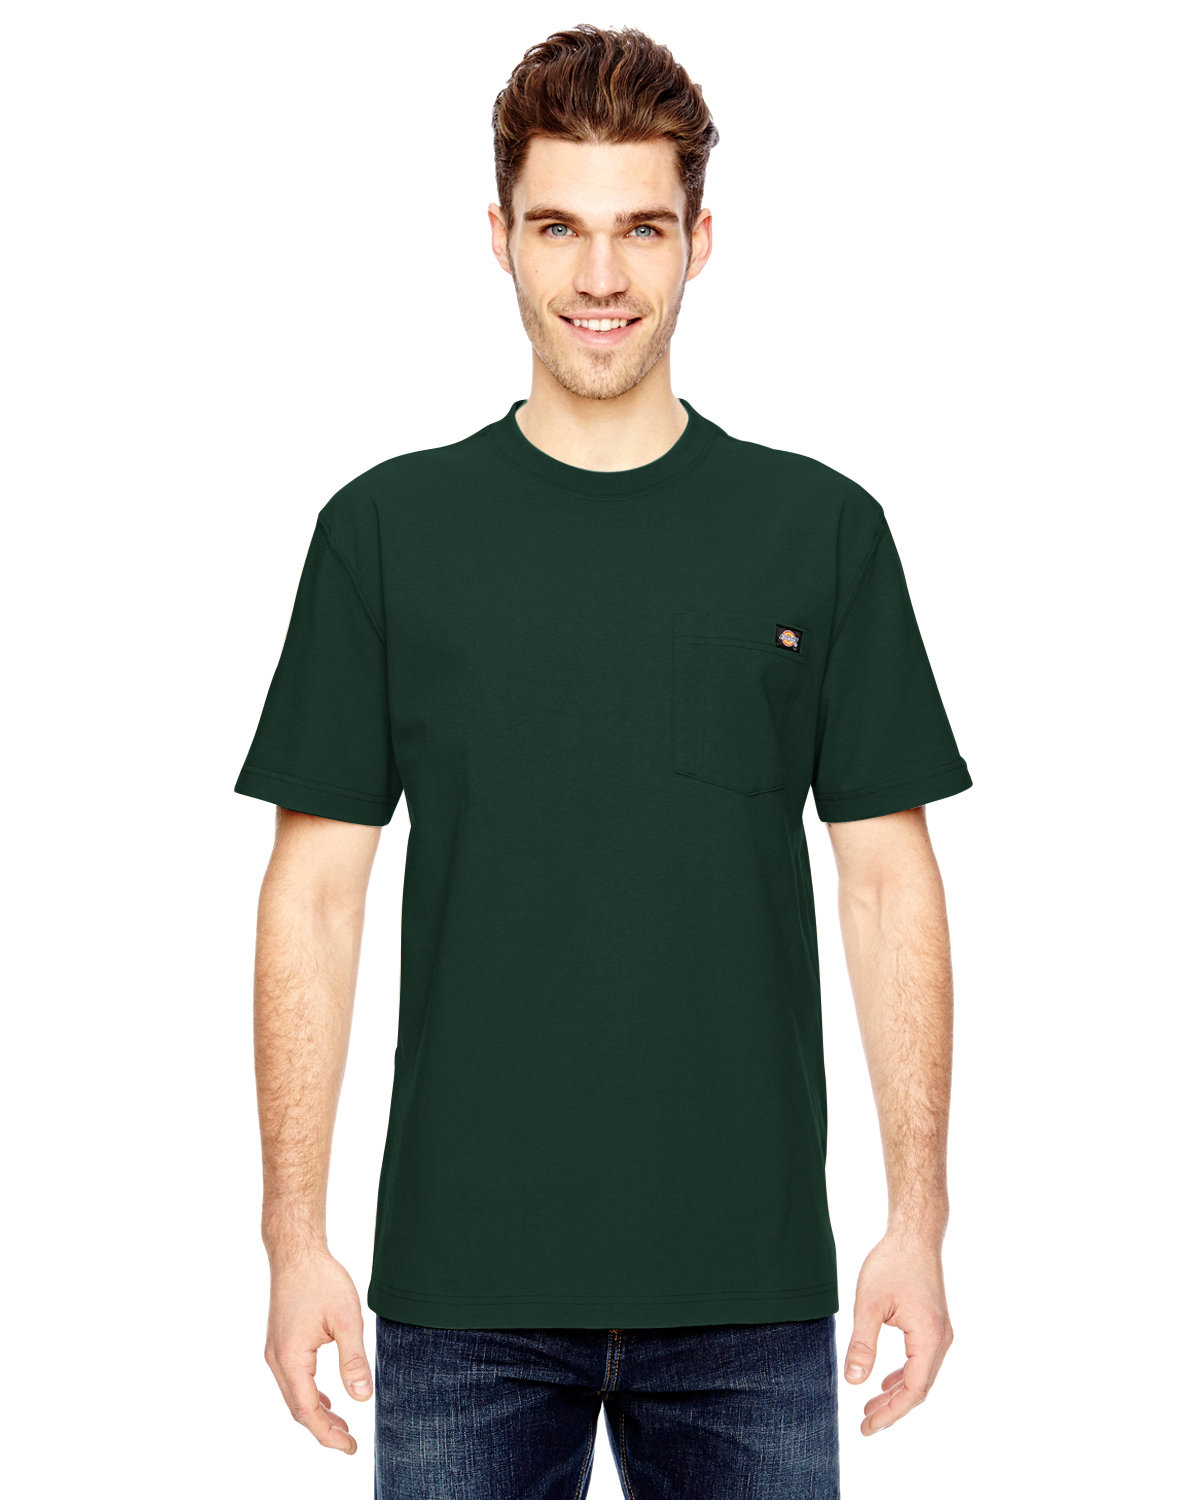 Heavyweight T-Shirt | Unisex alphabroder Dickies Short-Sleeve